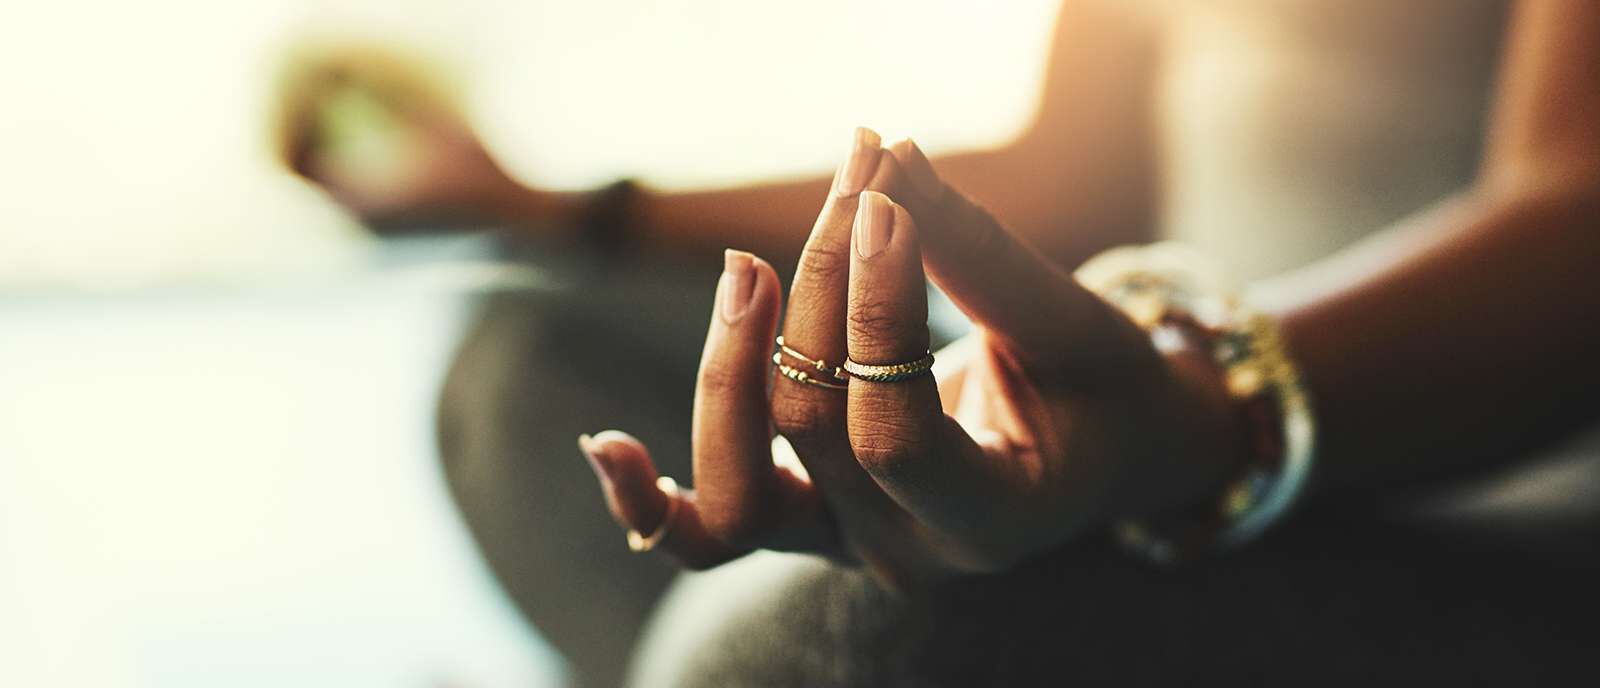 Écoutez votre “Hara” et trouvez votre équilibre intérieur